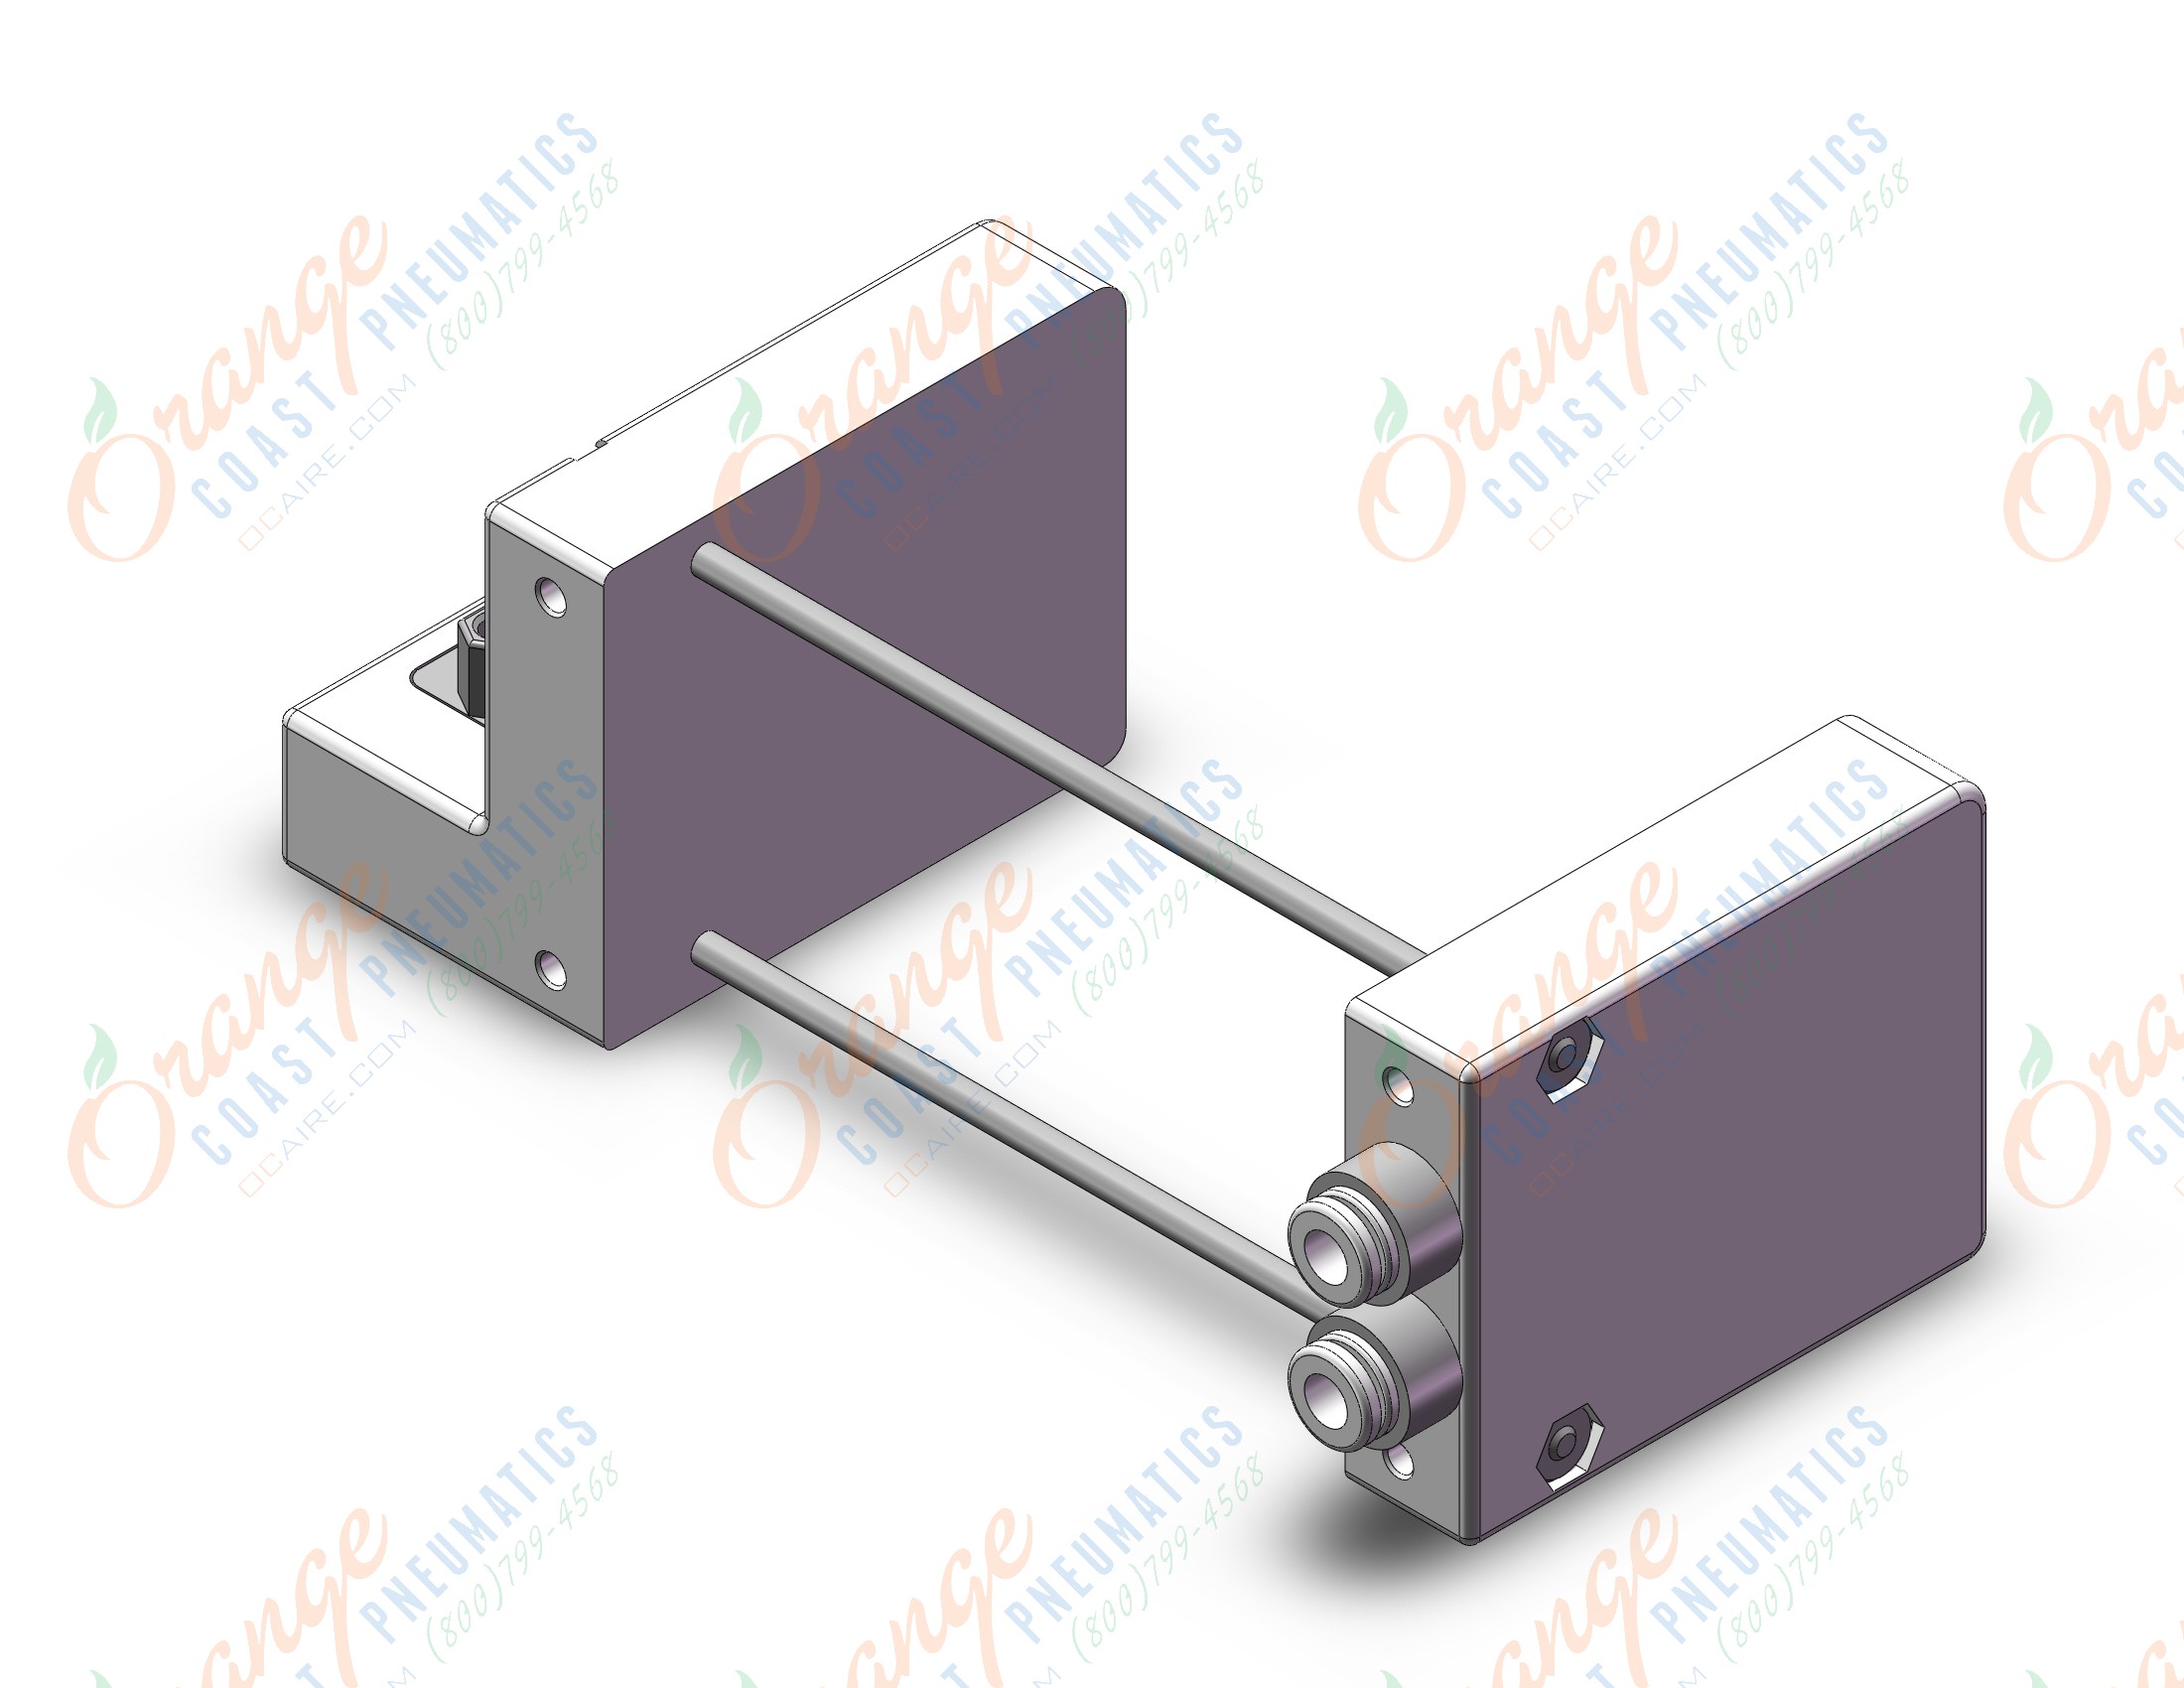 SMC VV100-10FAD1-07U1-C4 manifold, plug-in, 3 PORT SOLENOID VALVE